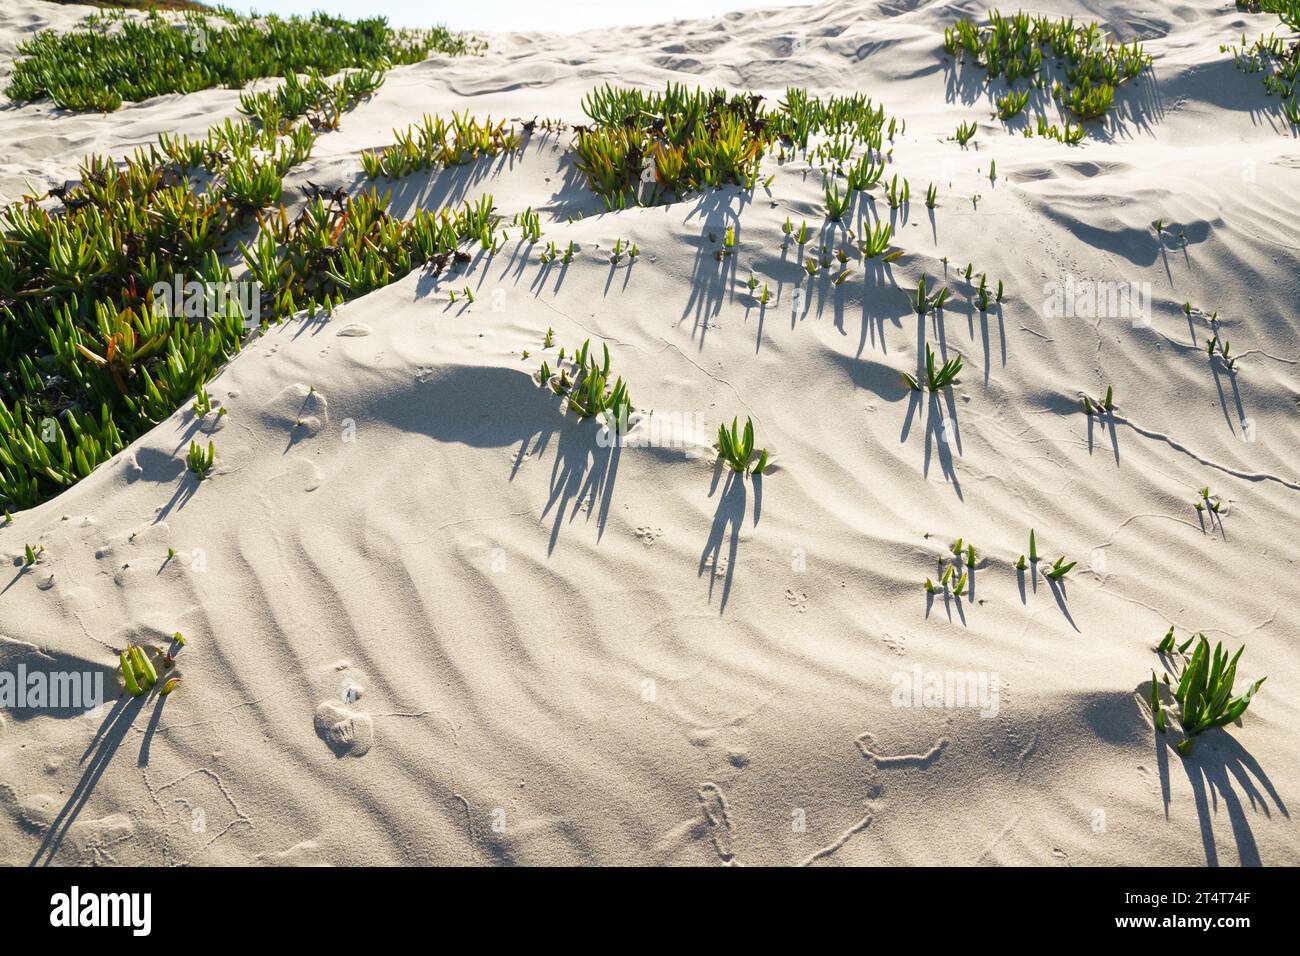 Eine Eispflanze am Strand. Sanddünen und einheimische Pflanzen an der kalifornischen Zentralküste. Stockfoto